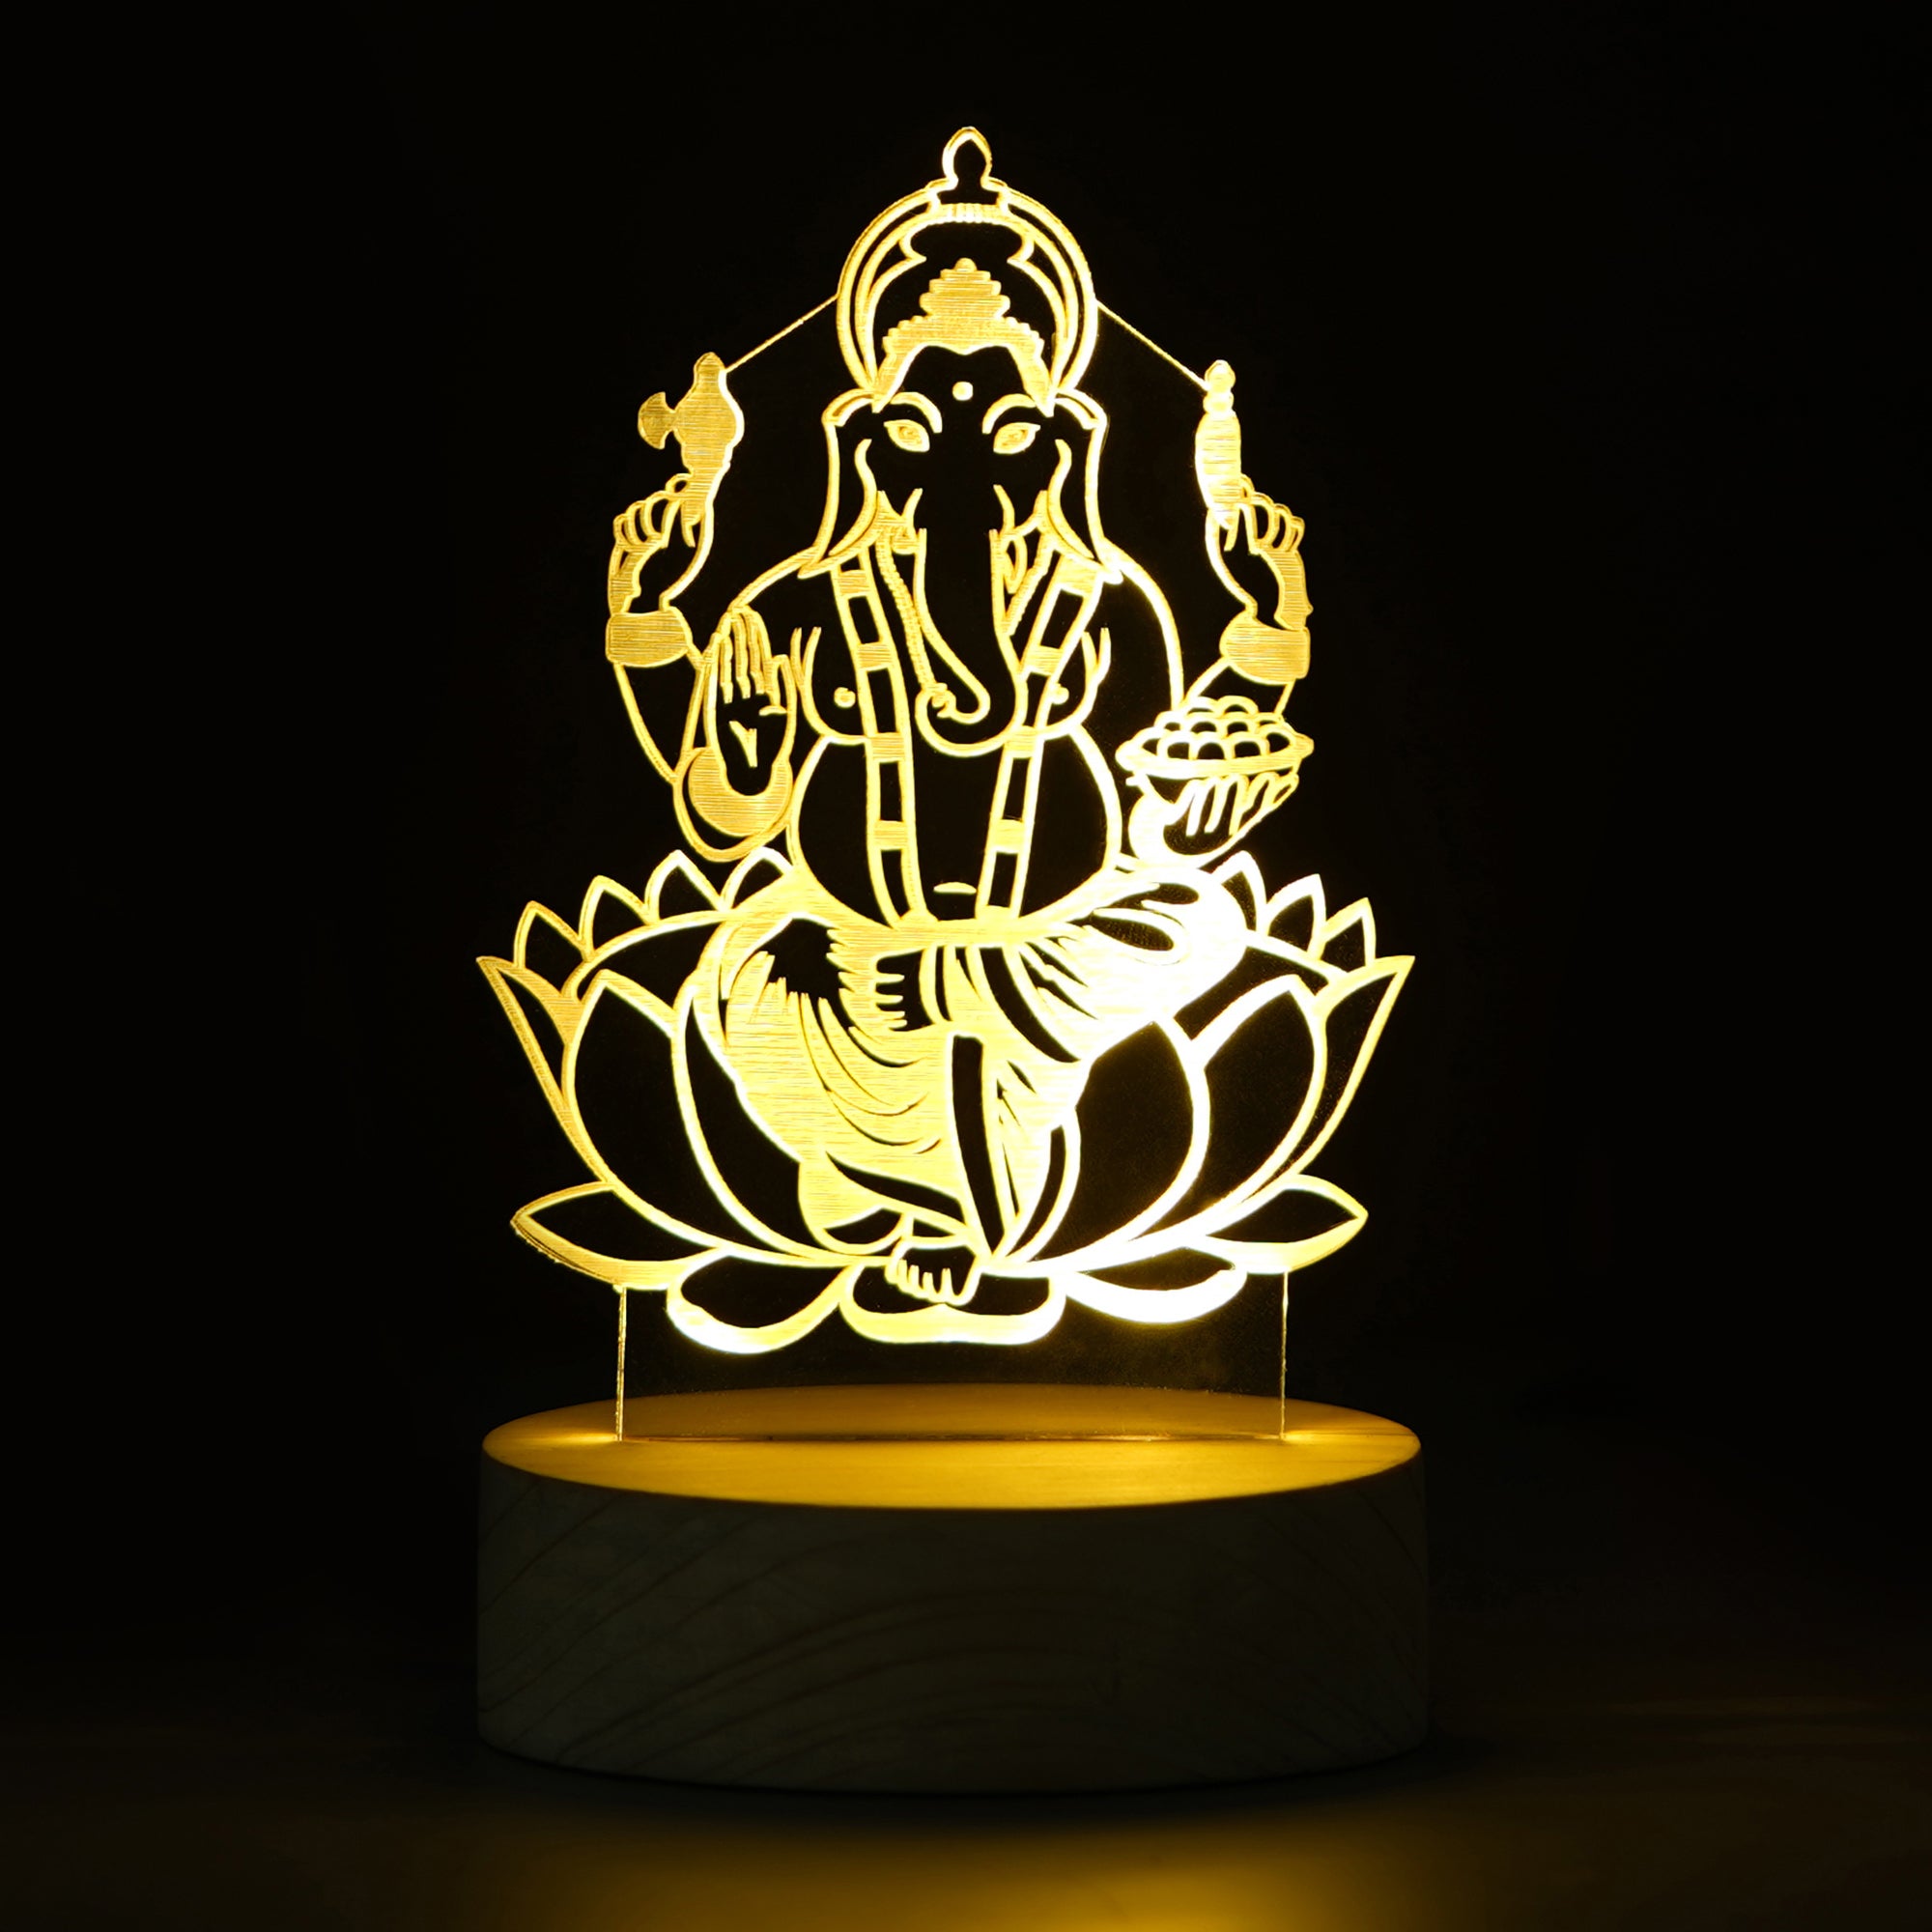 Lord Ganesha Design Carved on Acrylic & Wood Base Night Lamp 1